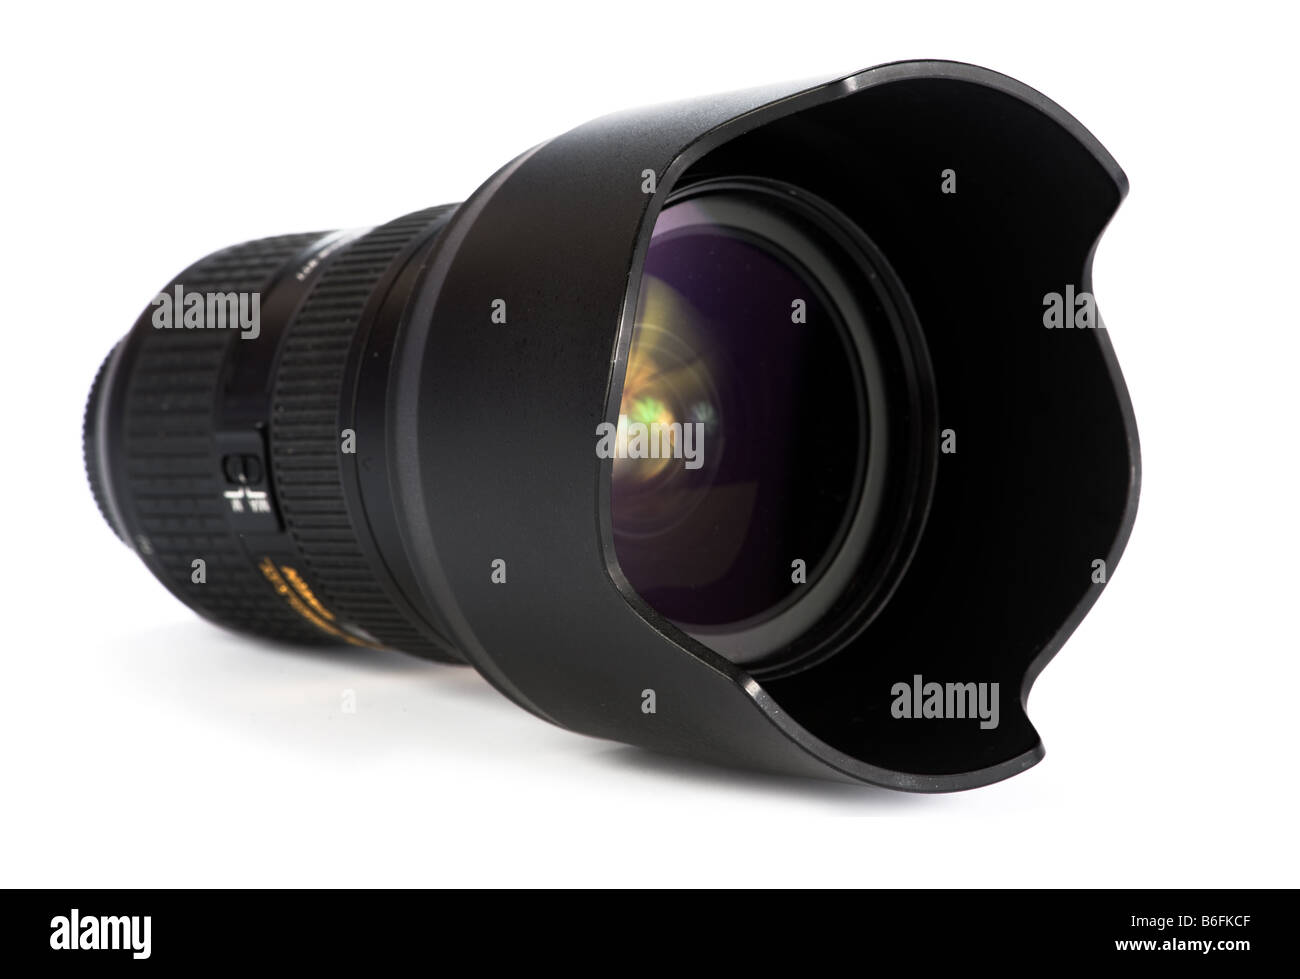 Il s'agit d'un objectif zoom 24 70 mm en qualité premium pour un appareil photo DSLR Banque D'Images